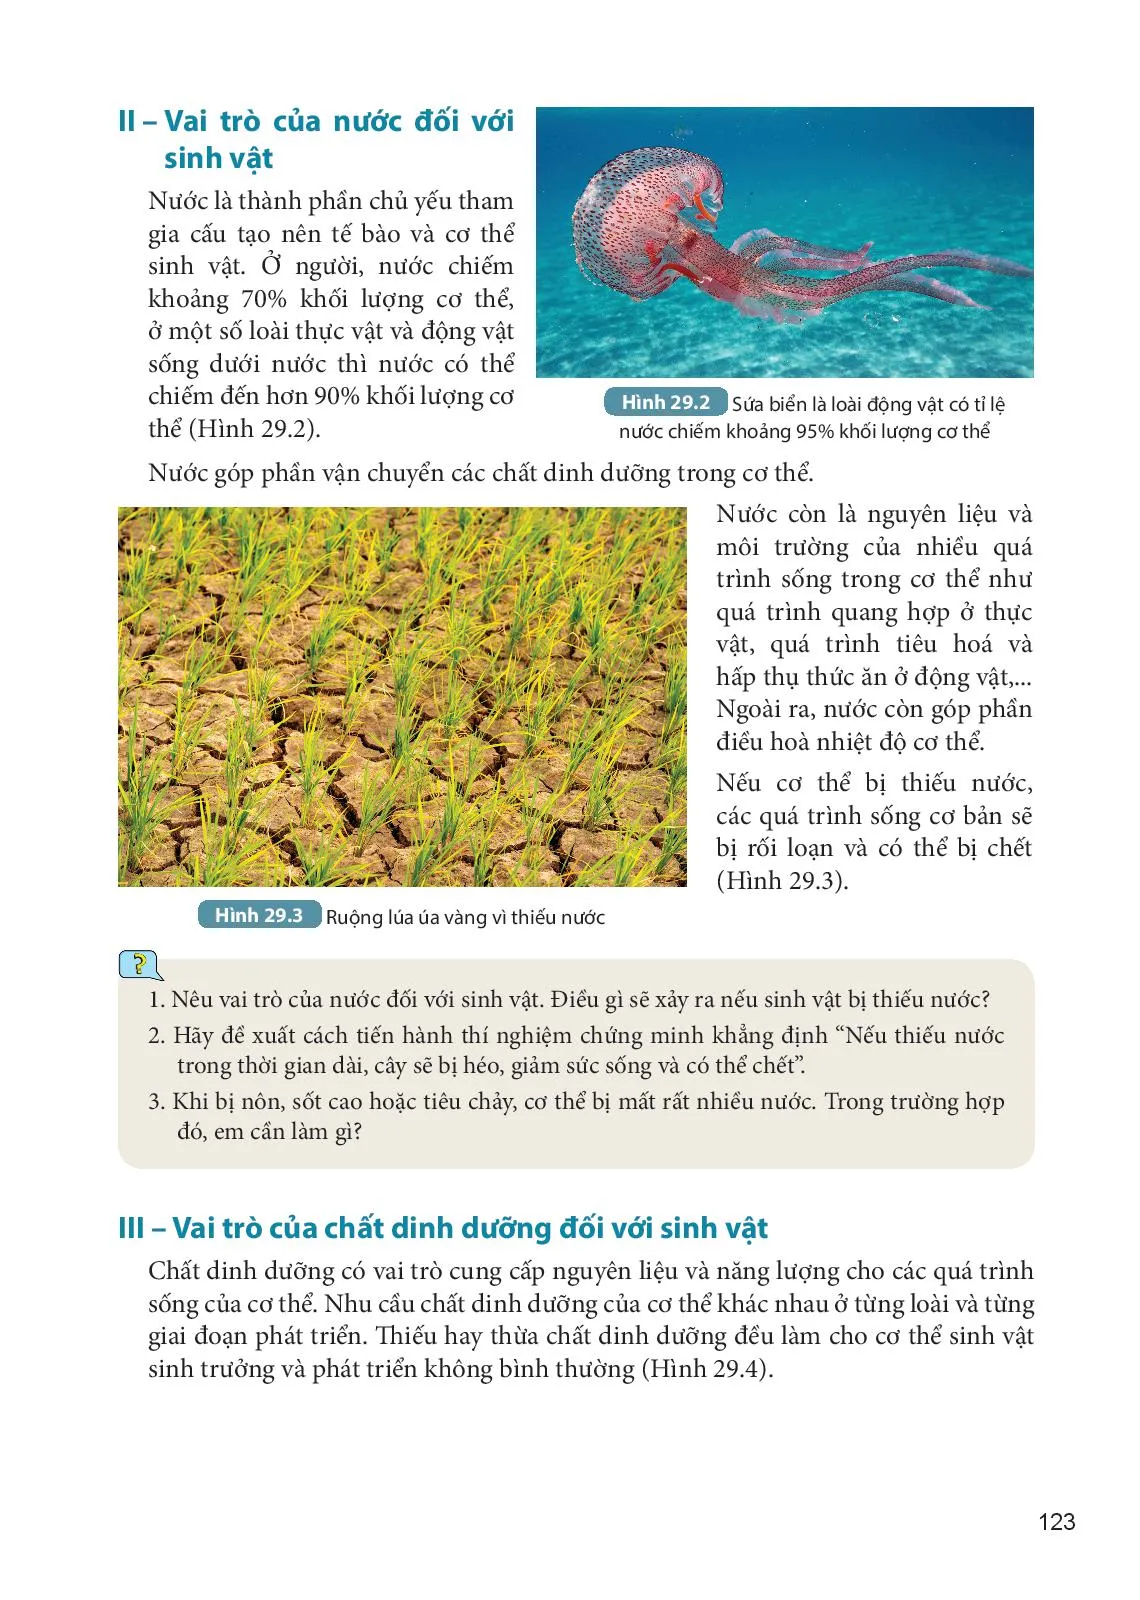 Bài 29 Vai trò của nước và chất dinh dưỡng đối với sinh vật